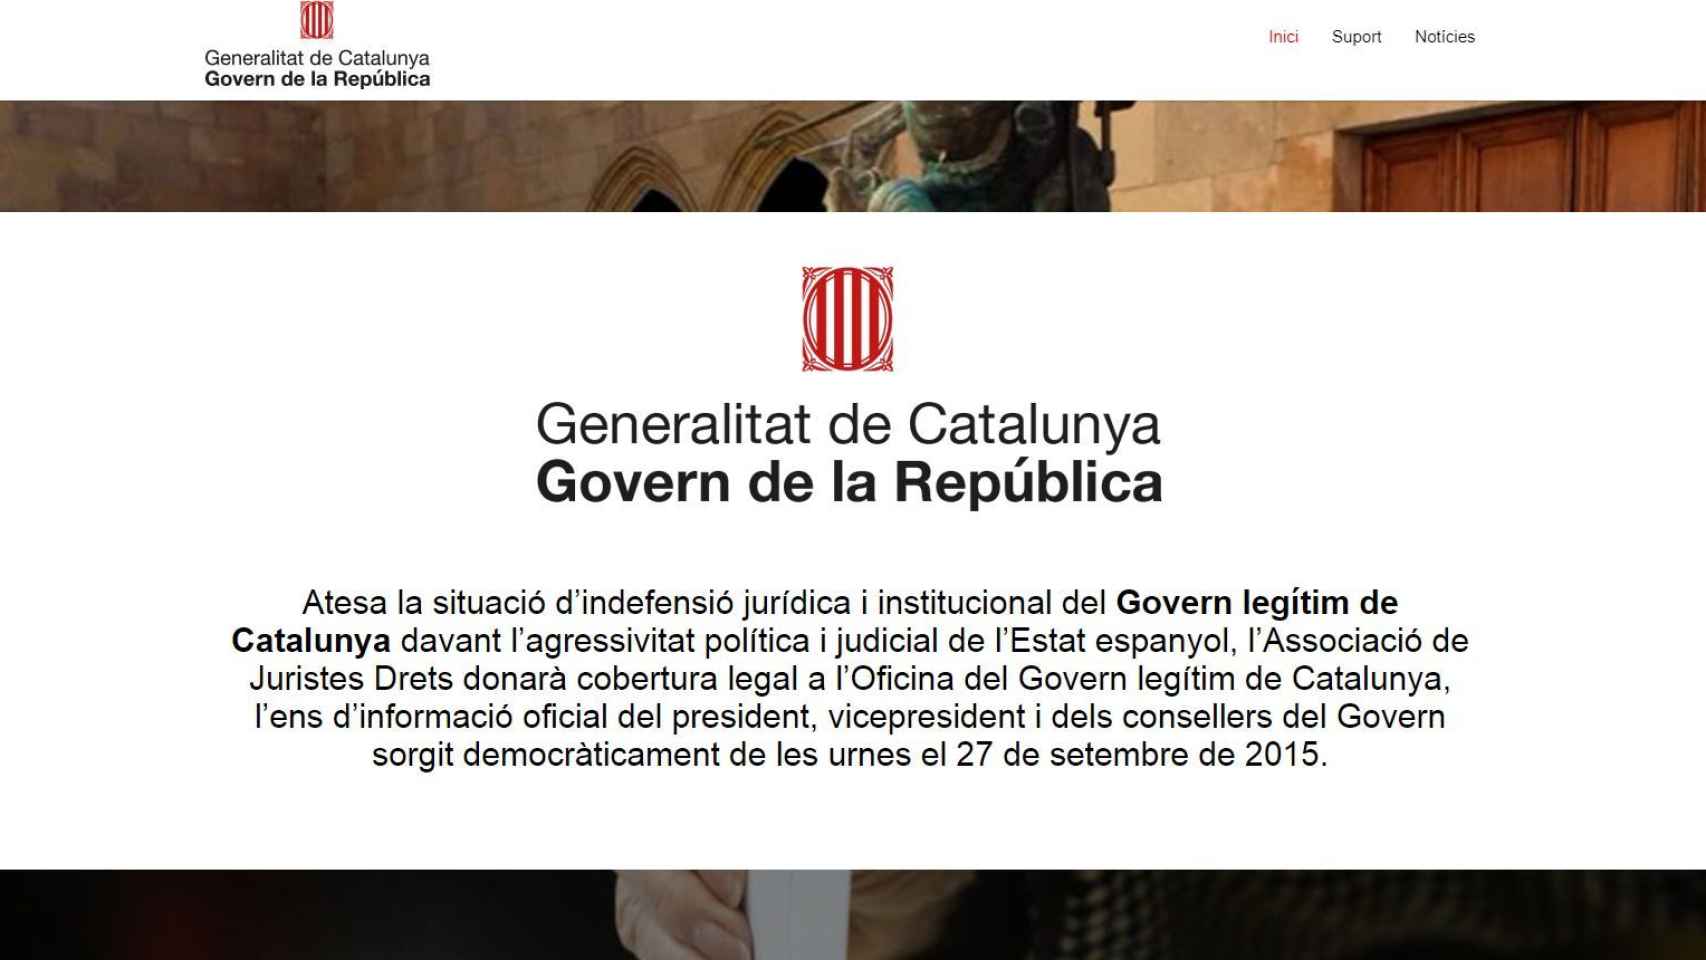 Imagen de la nueva web lanzada por Puigdemont.